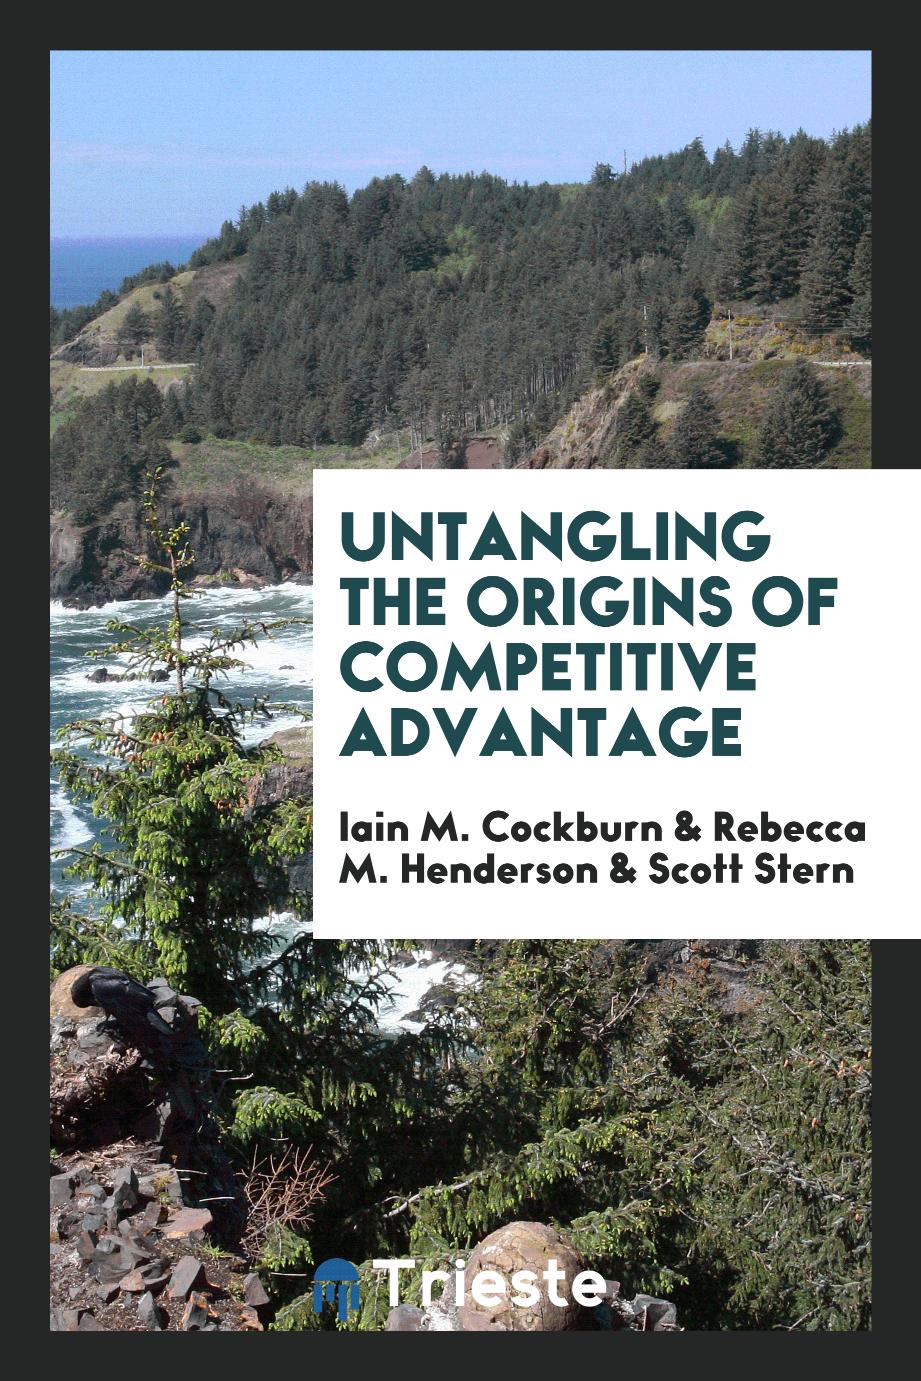 Iain M. Cockburn, Rebecca M. Henderson, Scott Stern - Untangling the origins of competitive advantage